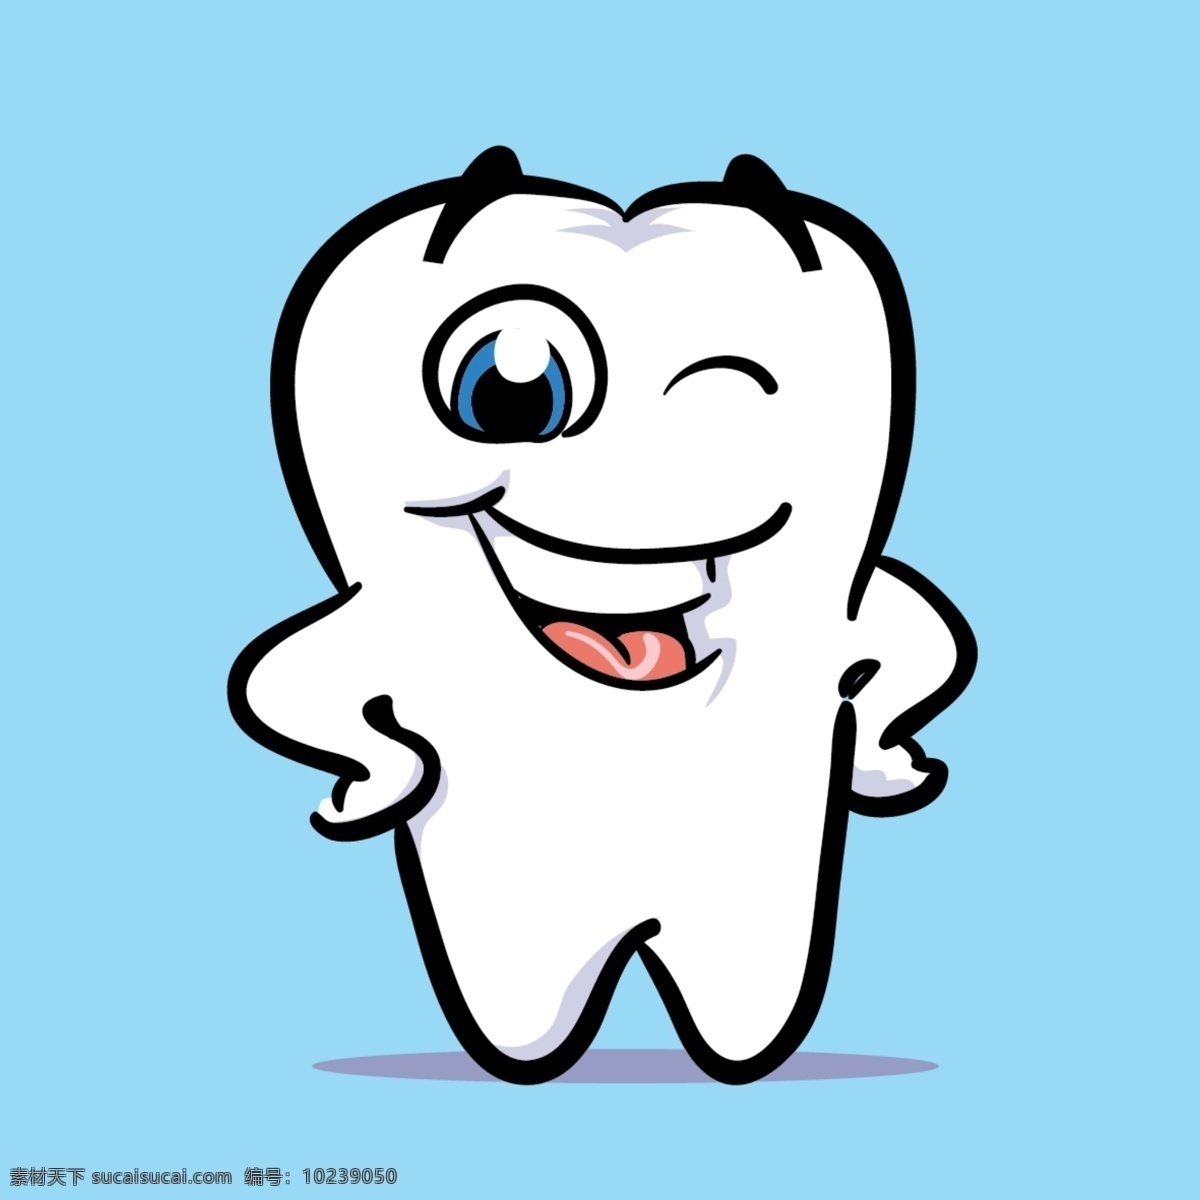 微笑 牙齿 微笑的牙齿 牙齿素材 卡通素材 卡通牙齿